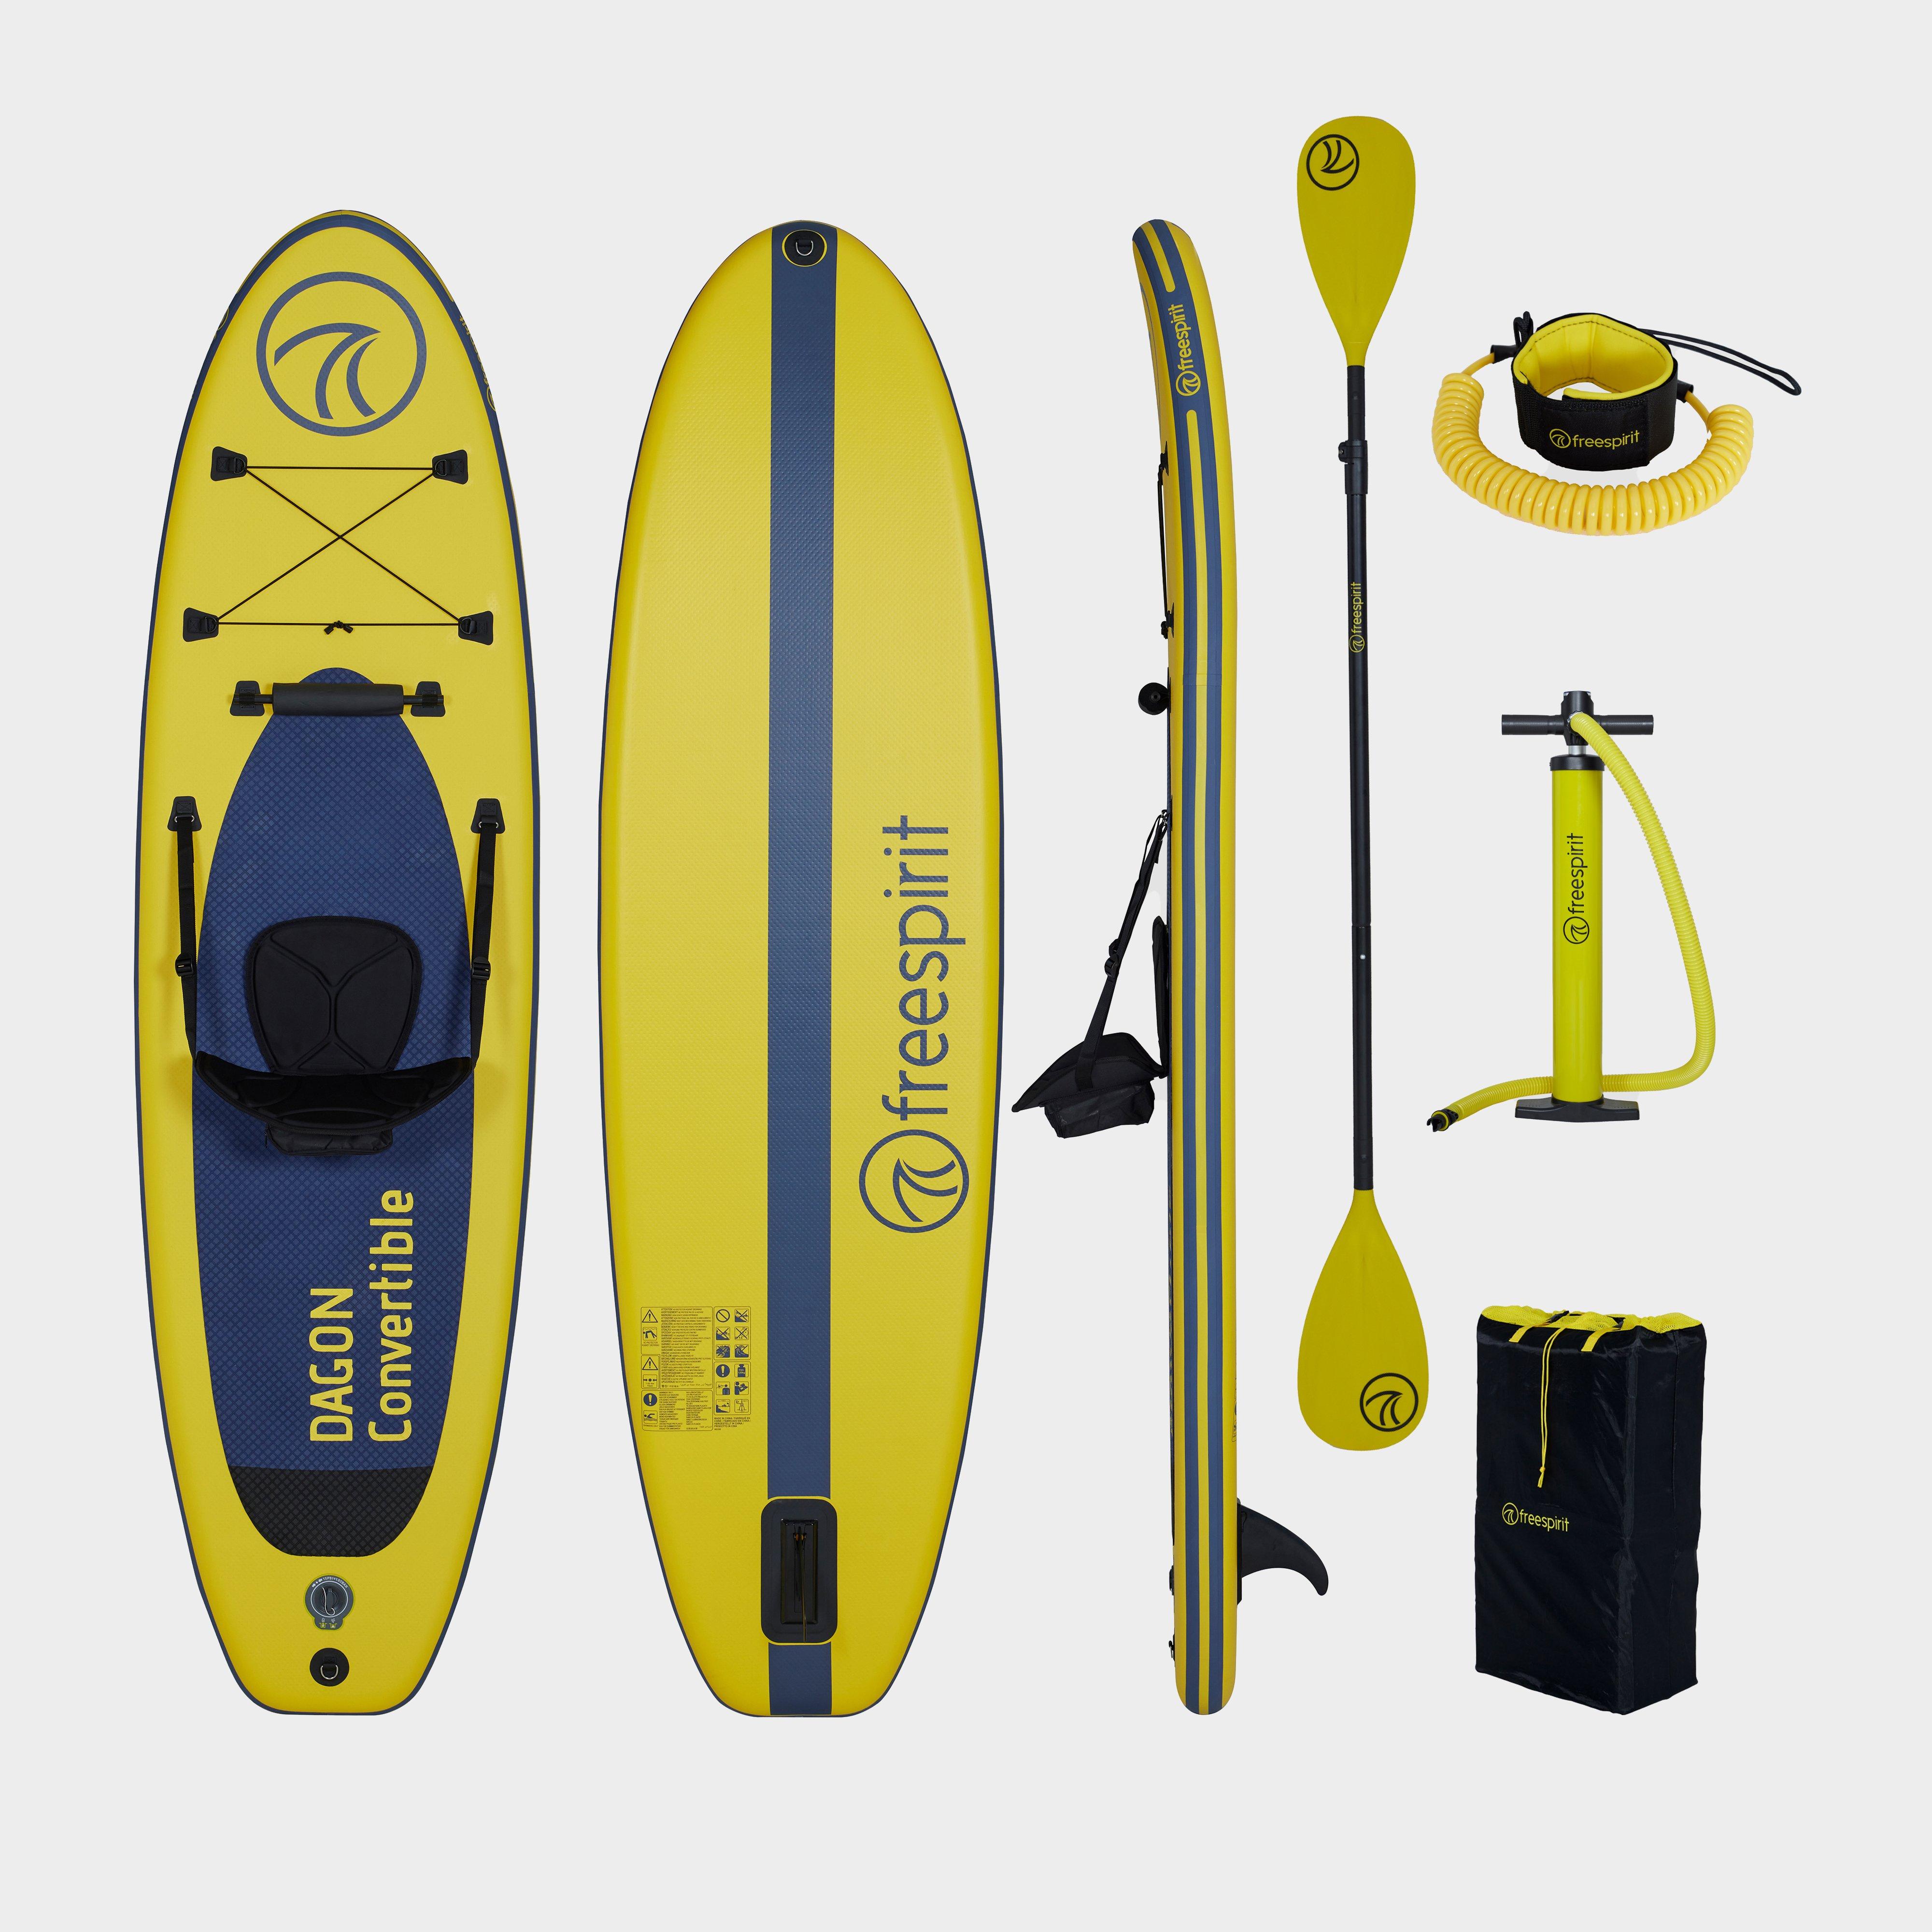  Freespirit Dagon 10ft Convertible Stand-up Paddle Board Set, Yellow